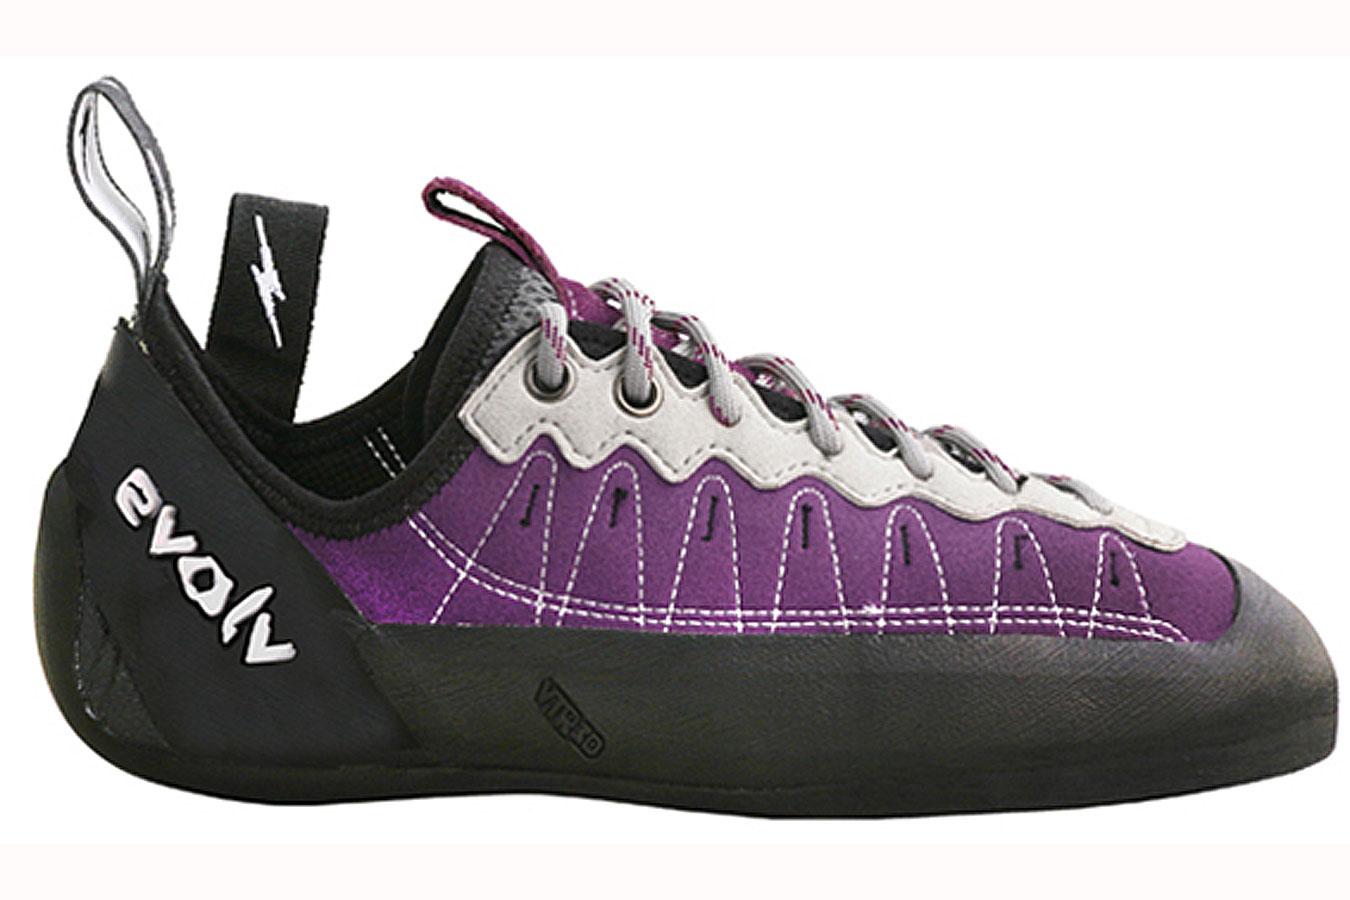 Foto Zapatillas para escalada Evolv Elektra Lace violeta/negro , 41